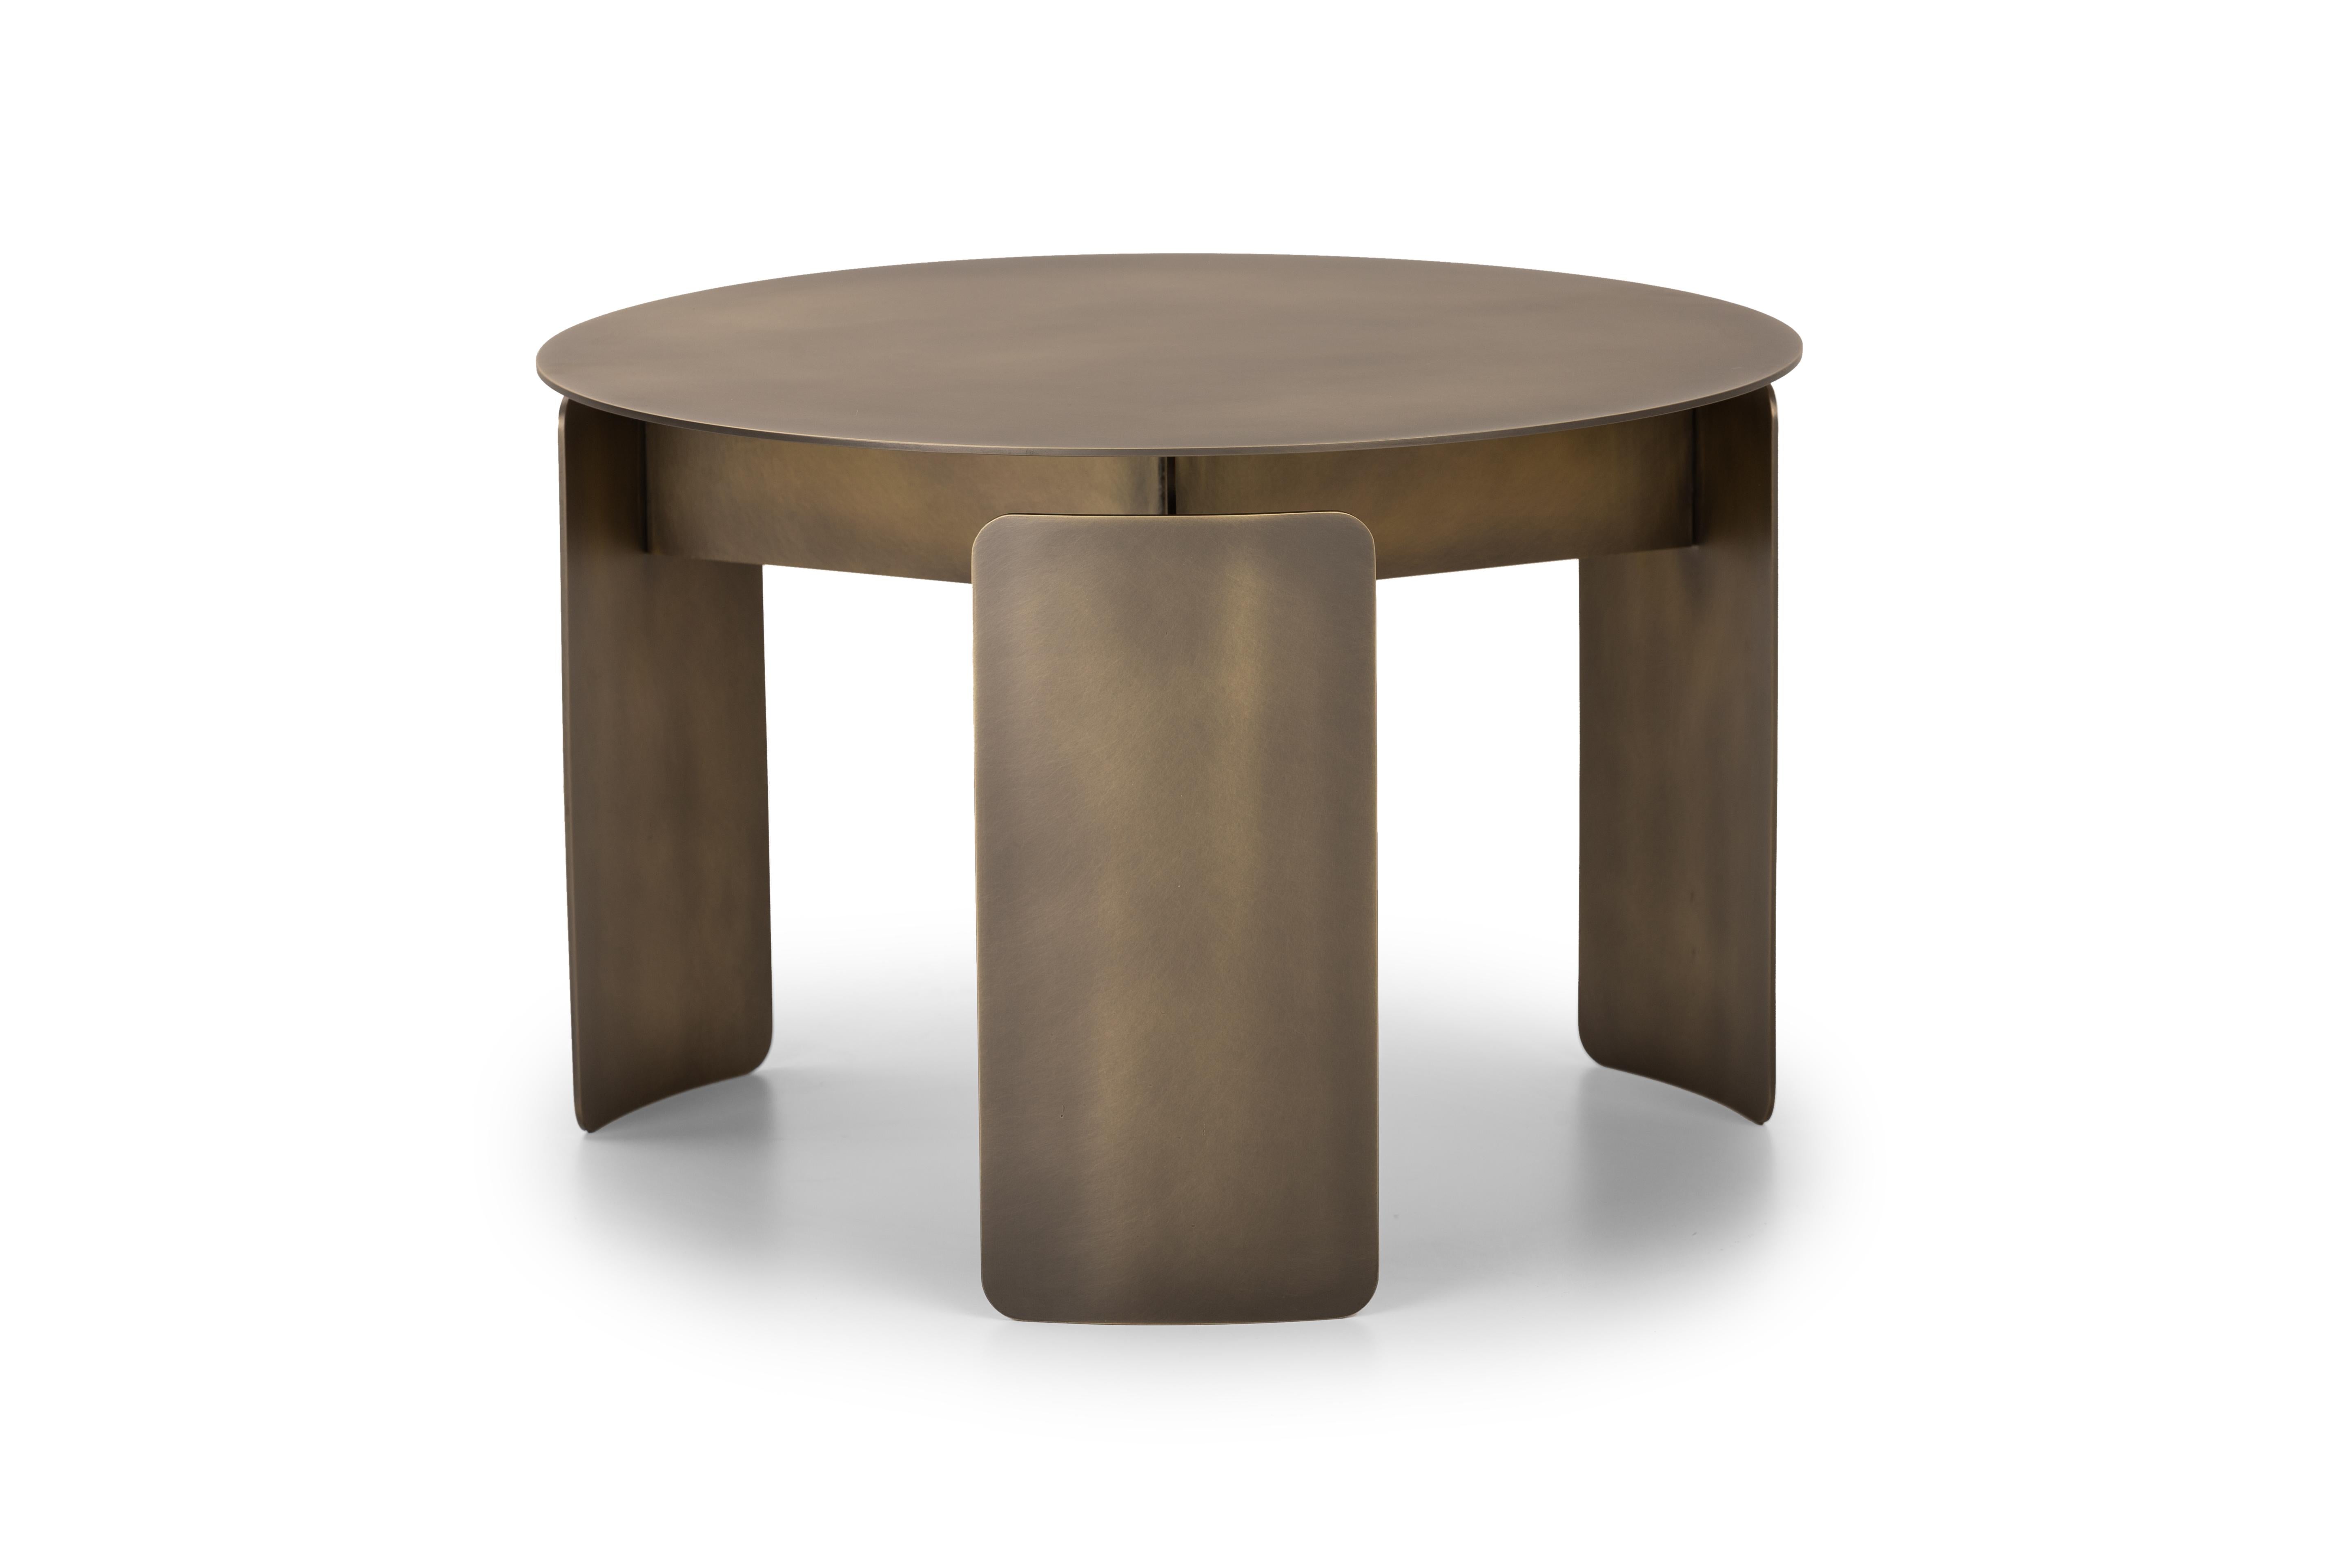 Table d'appoint Shirudo finition bronze par Mingardo
Dimensions : D 60 x H 40 cm 
MATERIAL : Acier inoxydable avec finition bronze nuageux mat.
Poids : 30 kg

Disponible également en différentes finitions. 

Le nom Shirudo vient du mot japonais